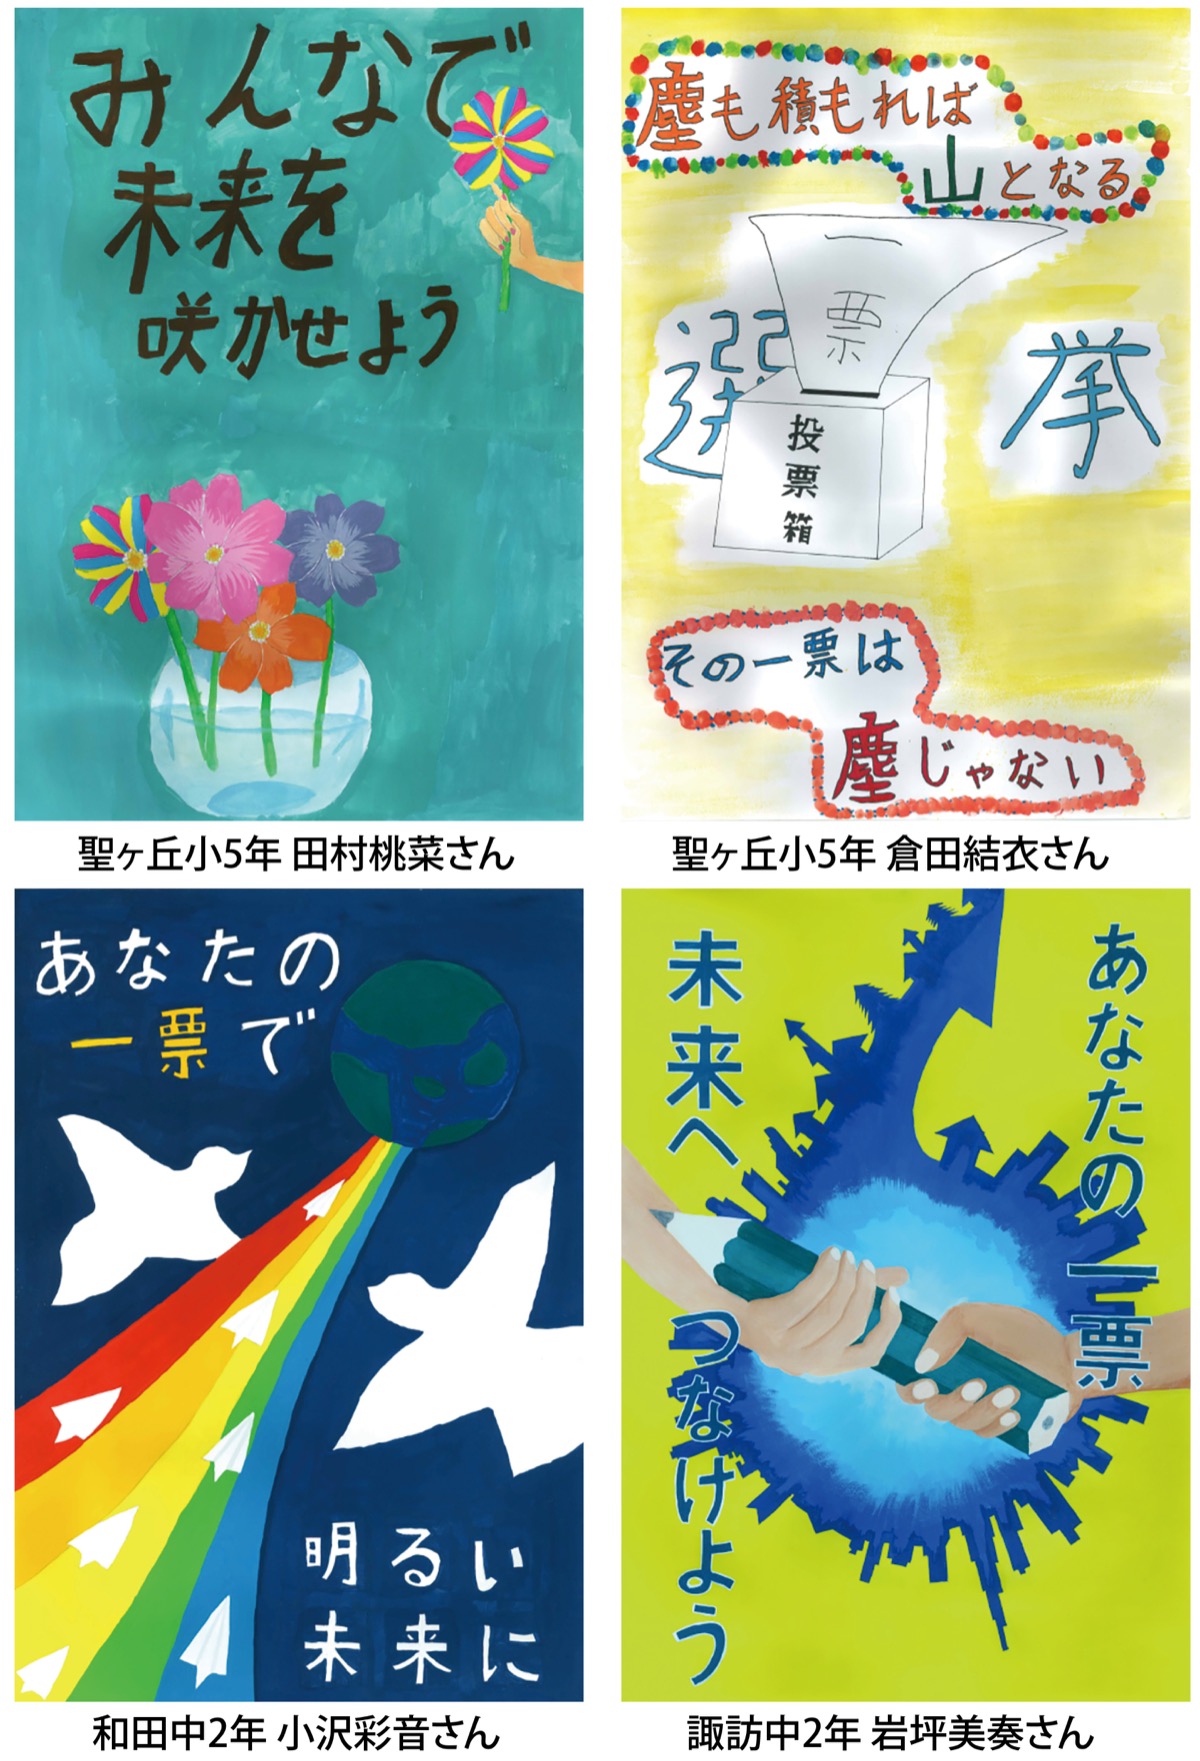 多摩市内から４作品が奨励賞に 東京都明るい選挙ポスターコンクール 多摩 タウンニュース